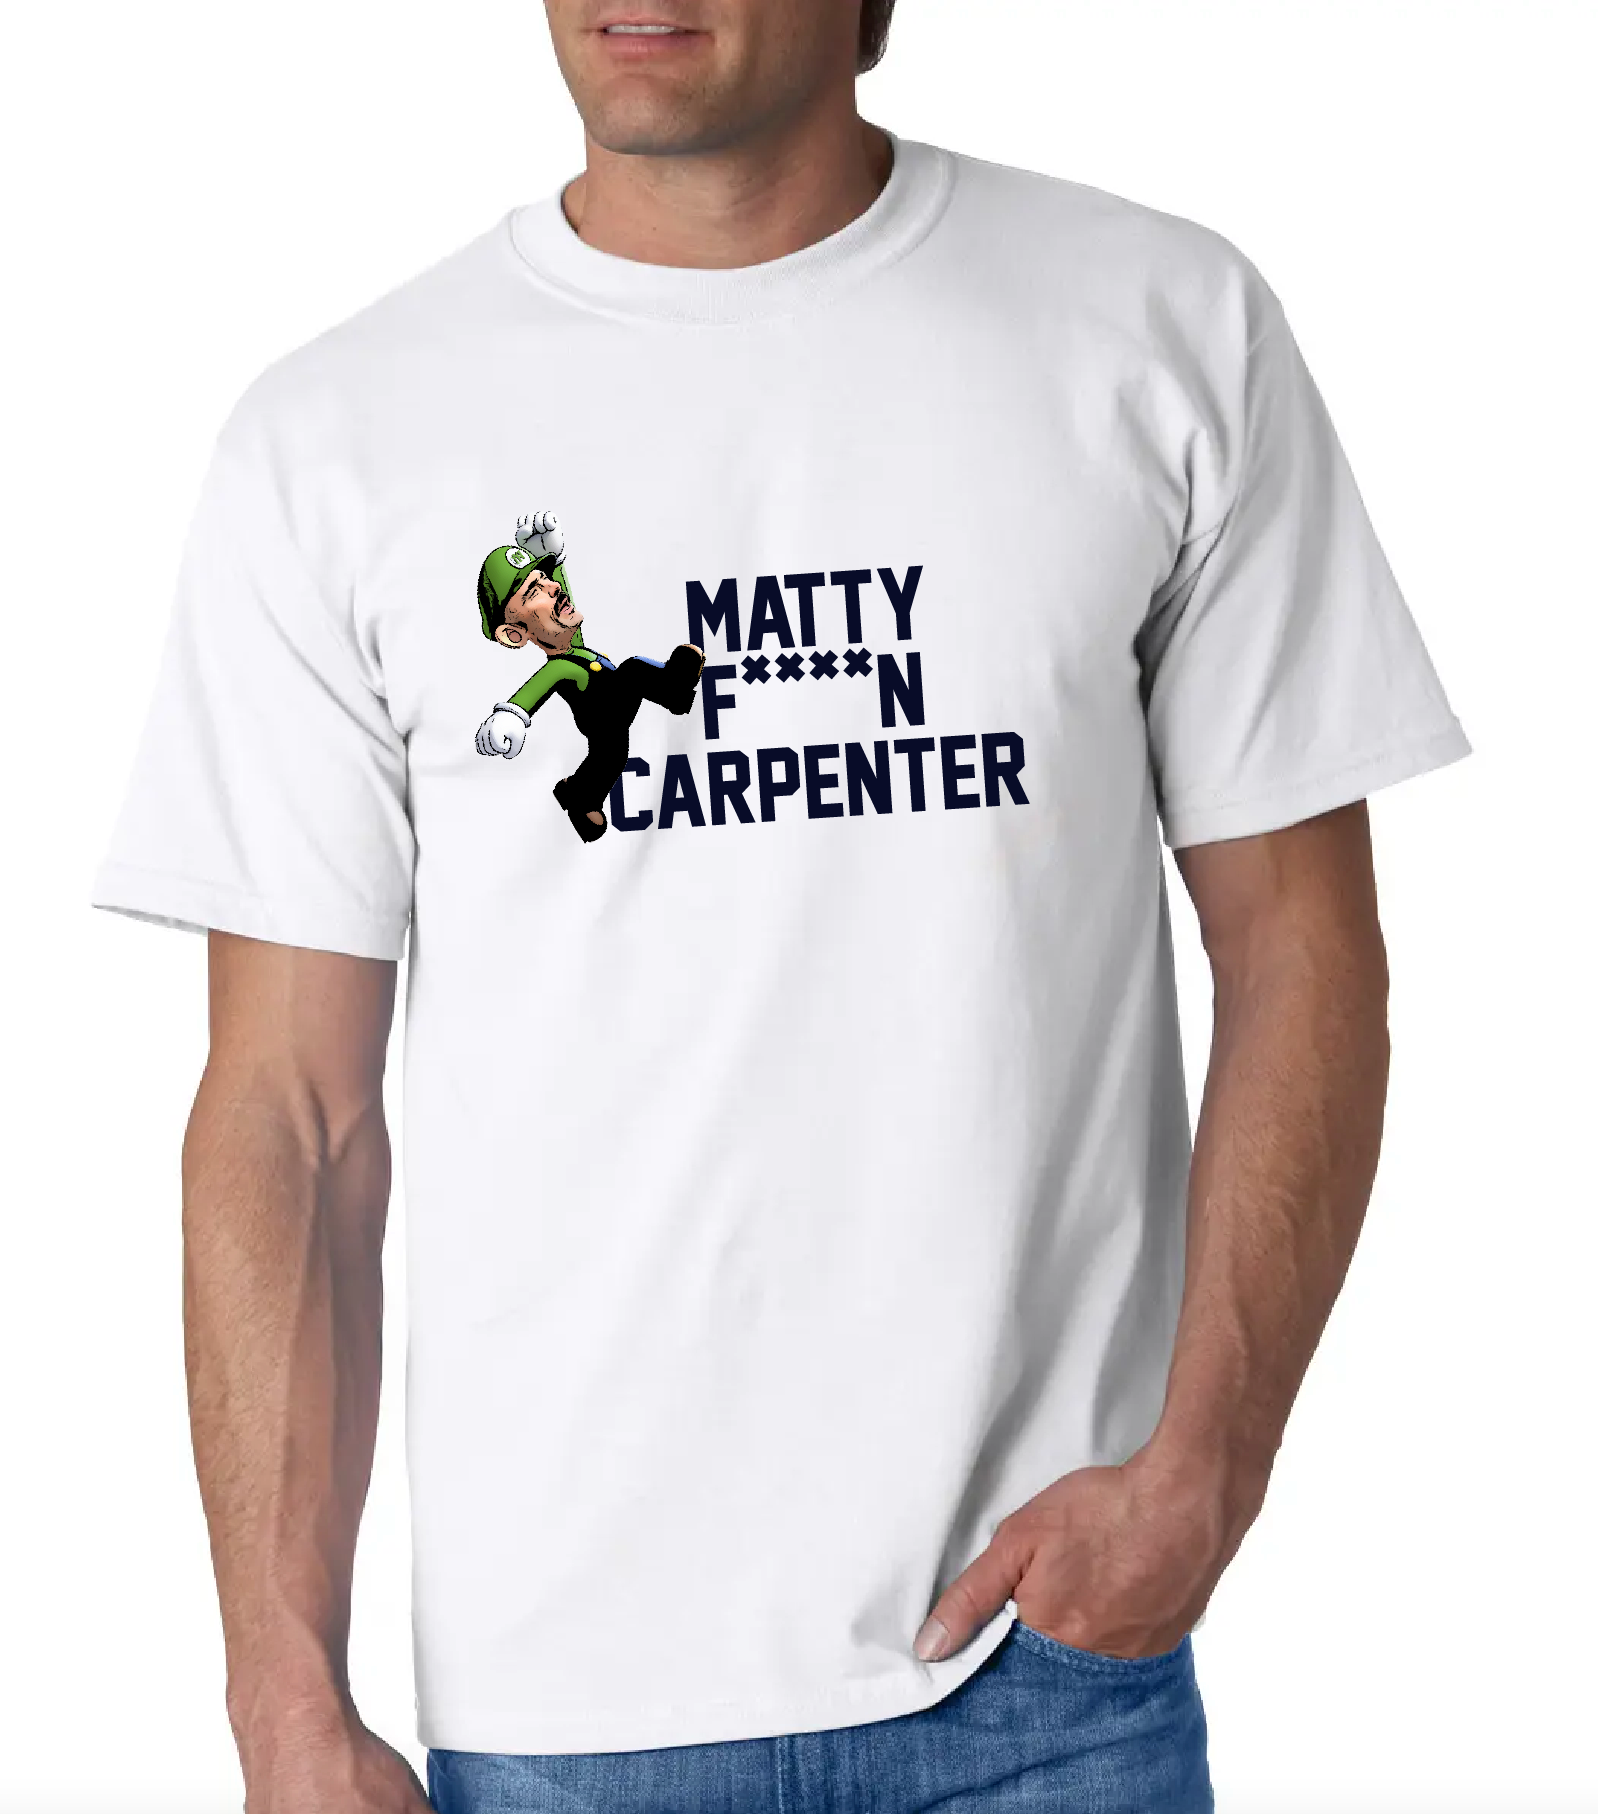 Matt Carpenter T-Shirts for Sale